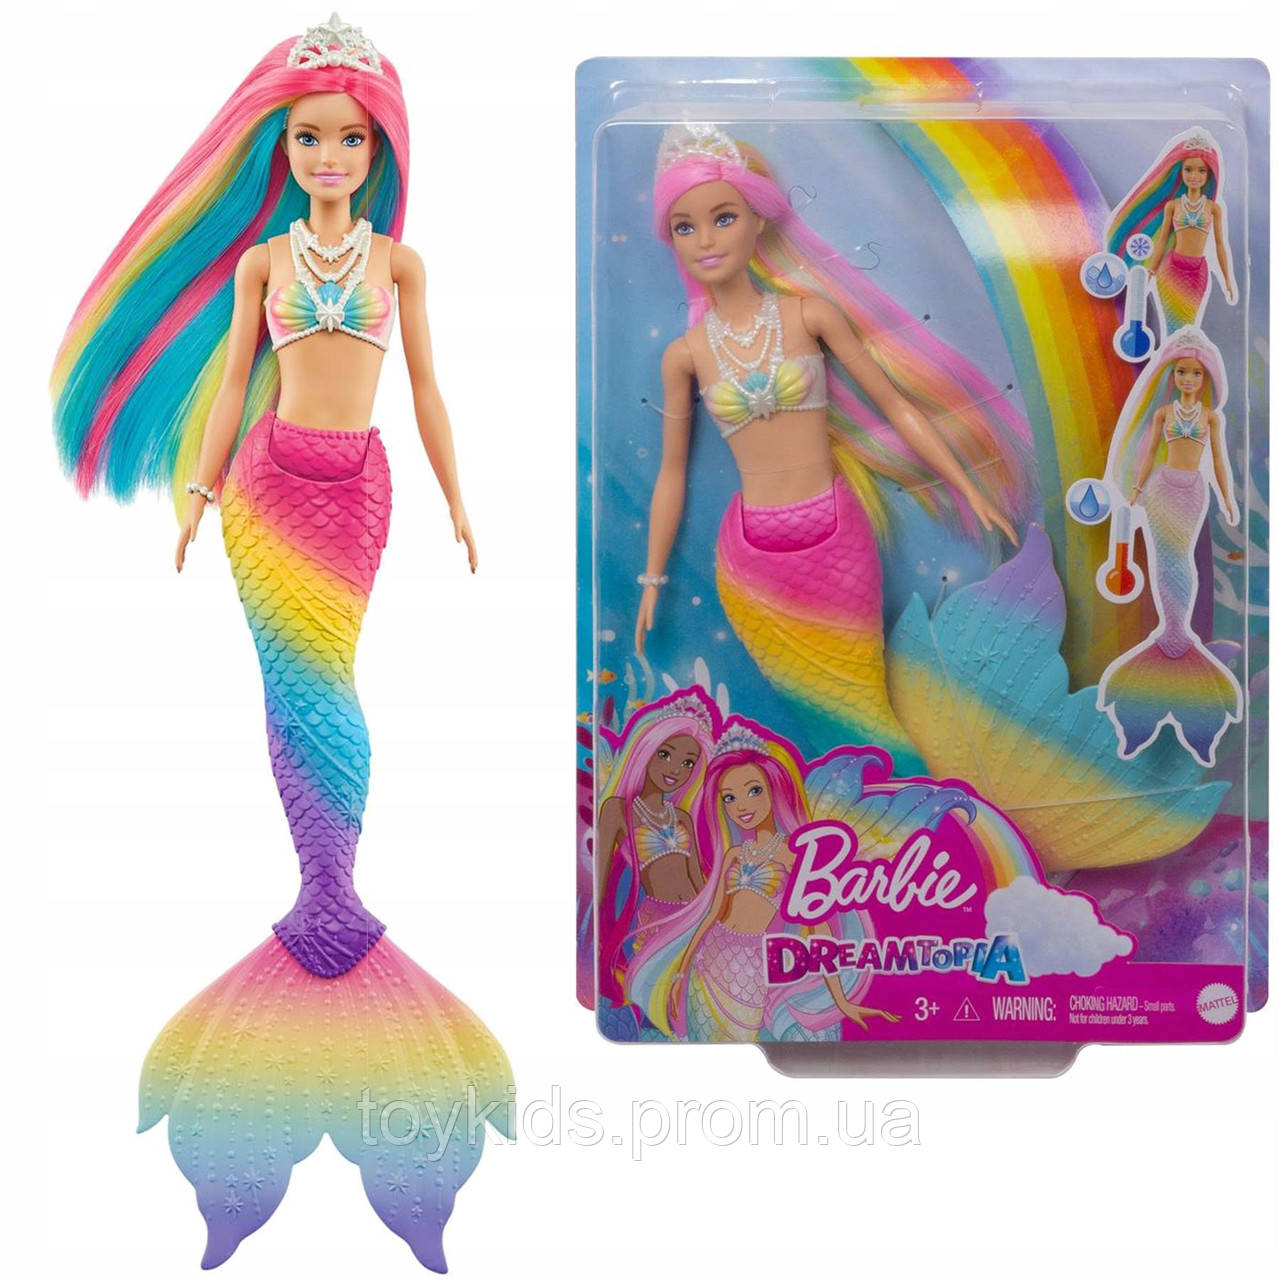 Кукла Барби русалка Цветная игра серии Дримтопия Barbie Dreamtopia Mattel  (GTF89), цена 700 грн - Prom.ua (ID#1383594797)